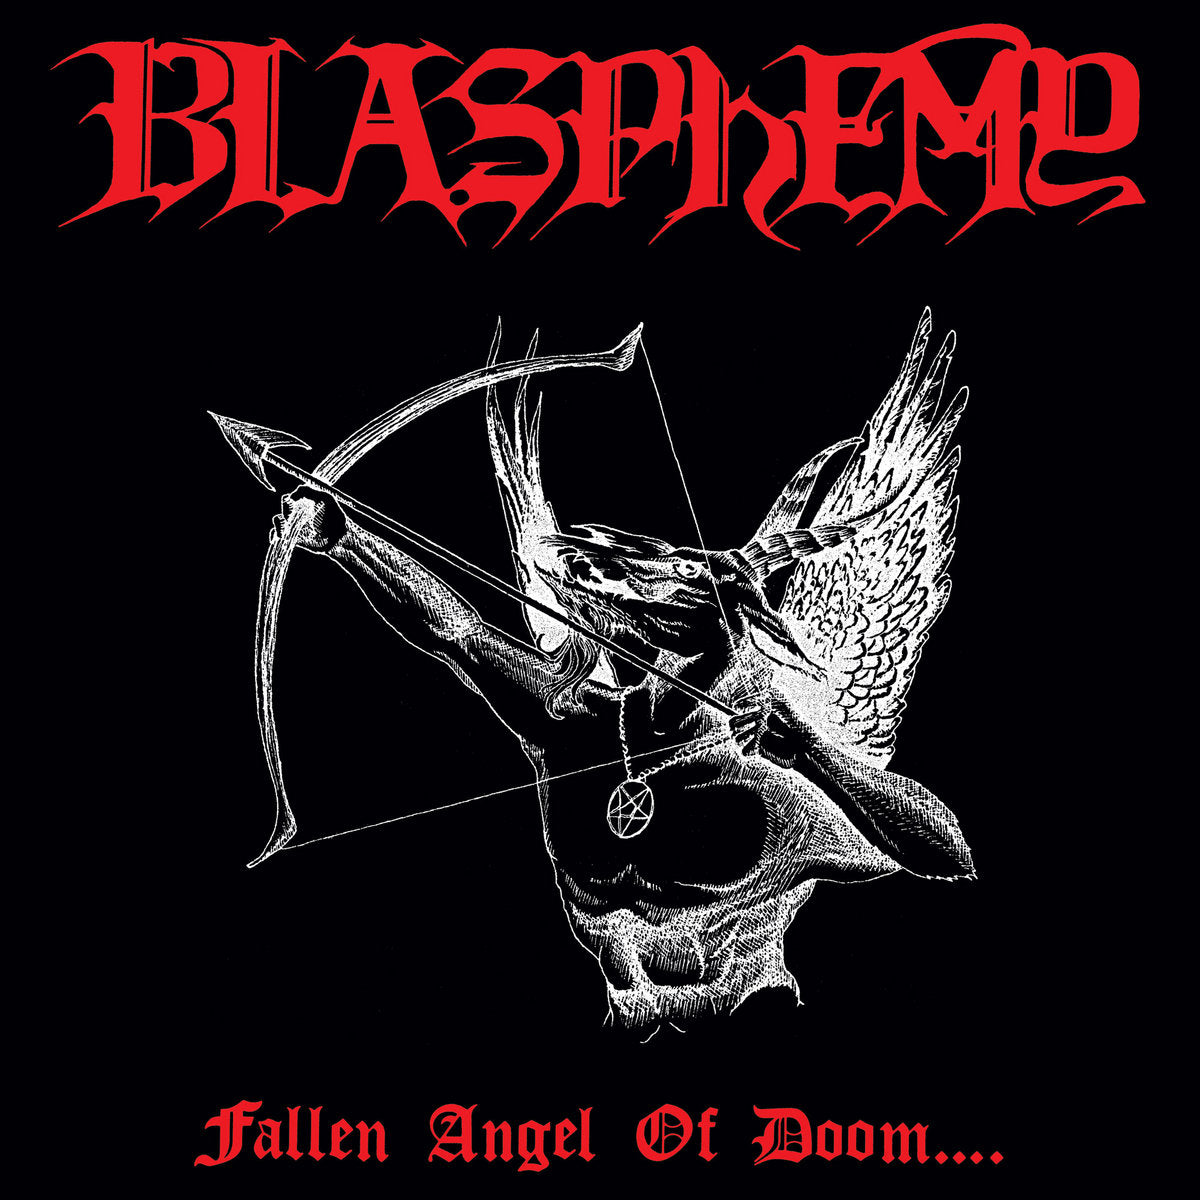 Blasphemy "Fallen Angel of Doom..."